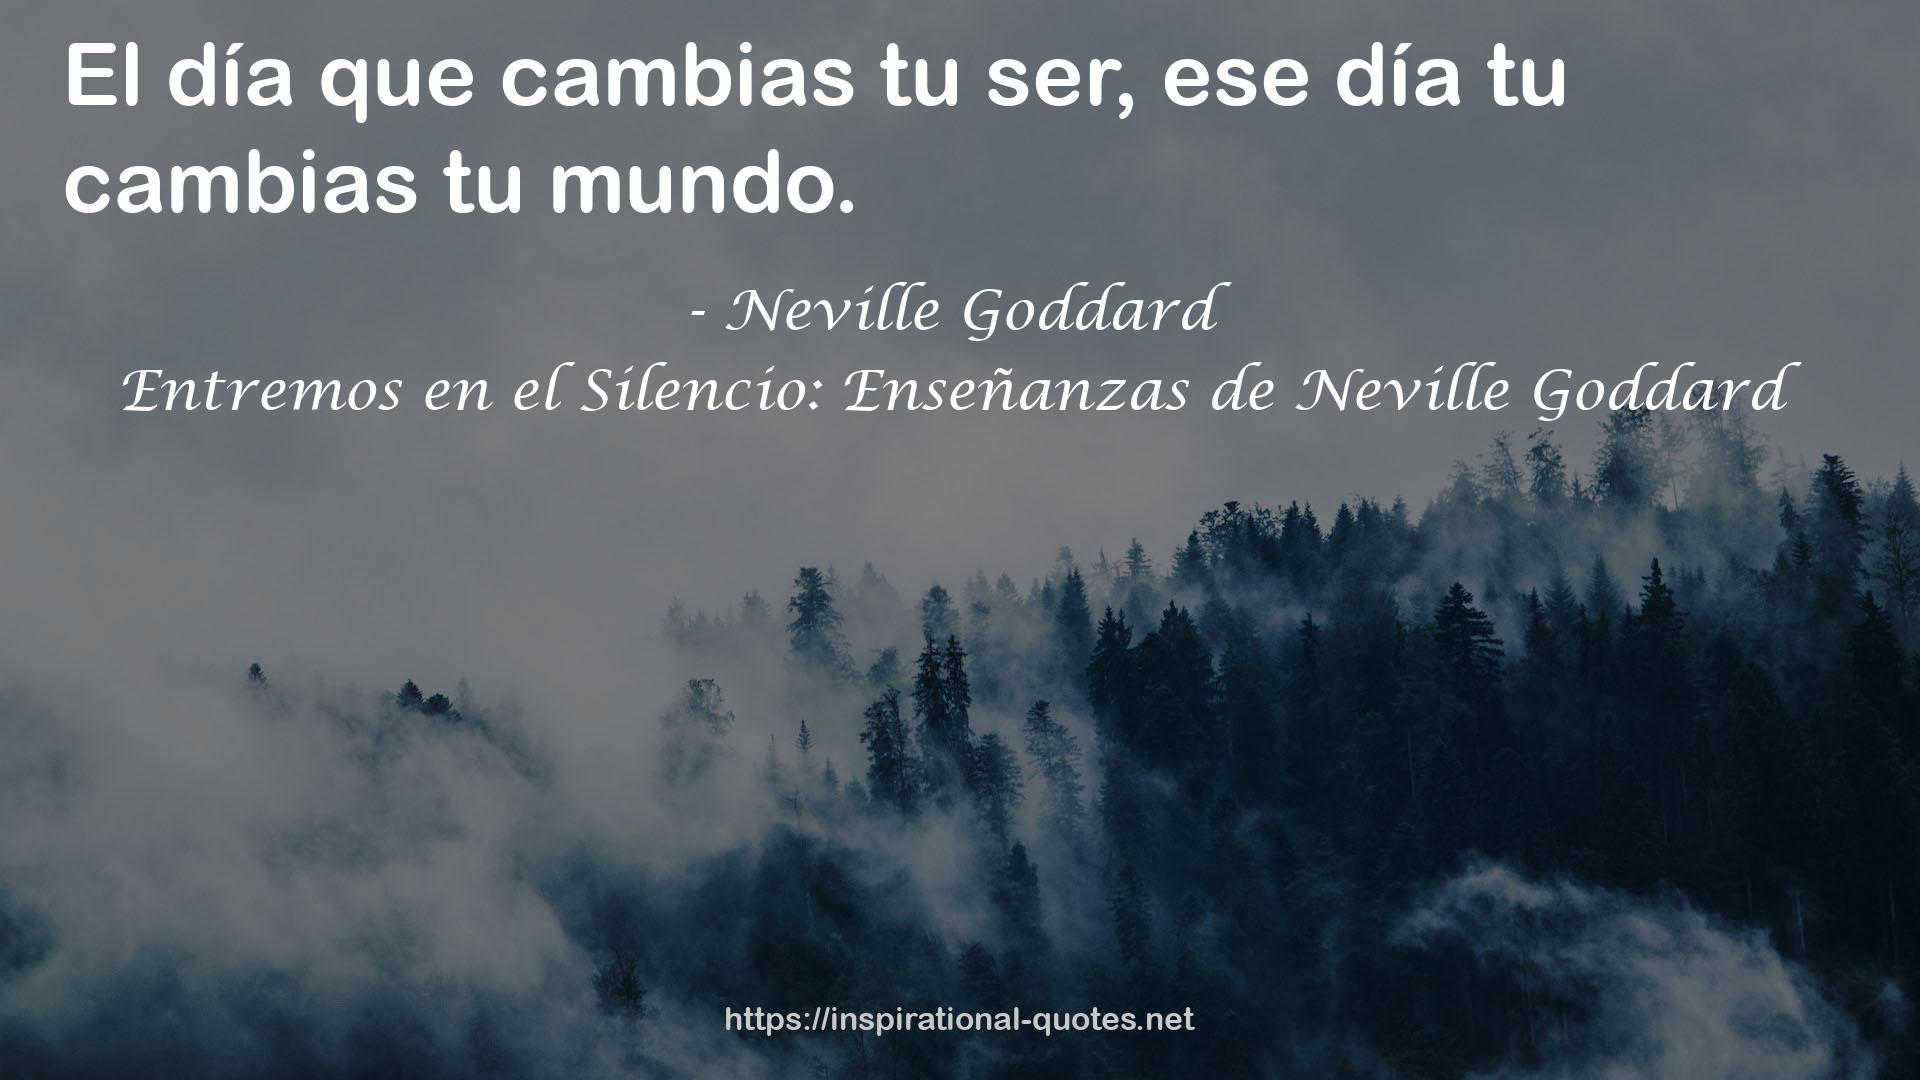 Entremos en el Silencio: Enseñanzas de Neville Goddard QUOTES